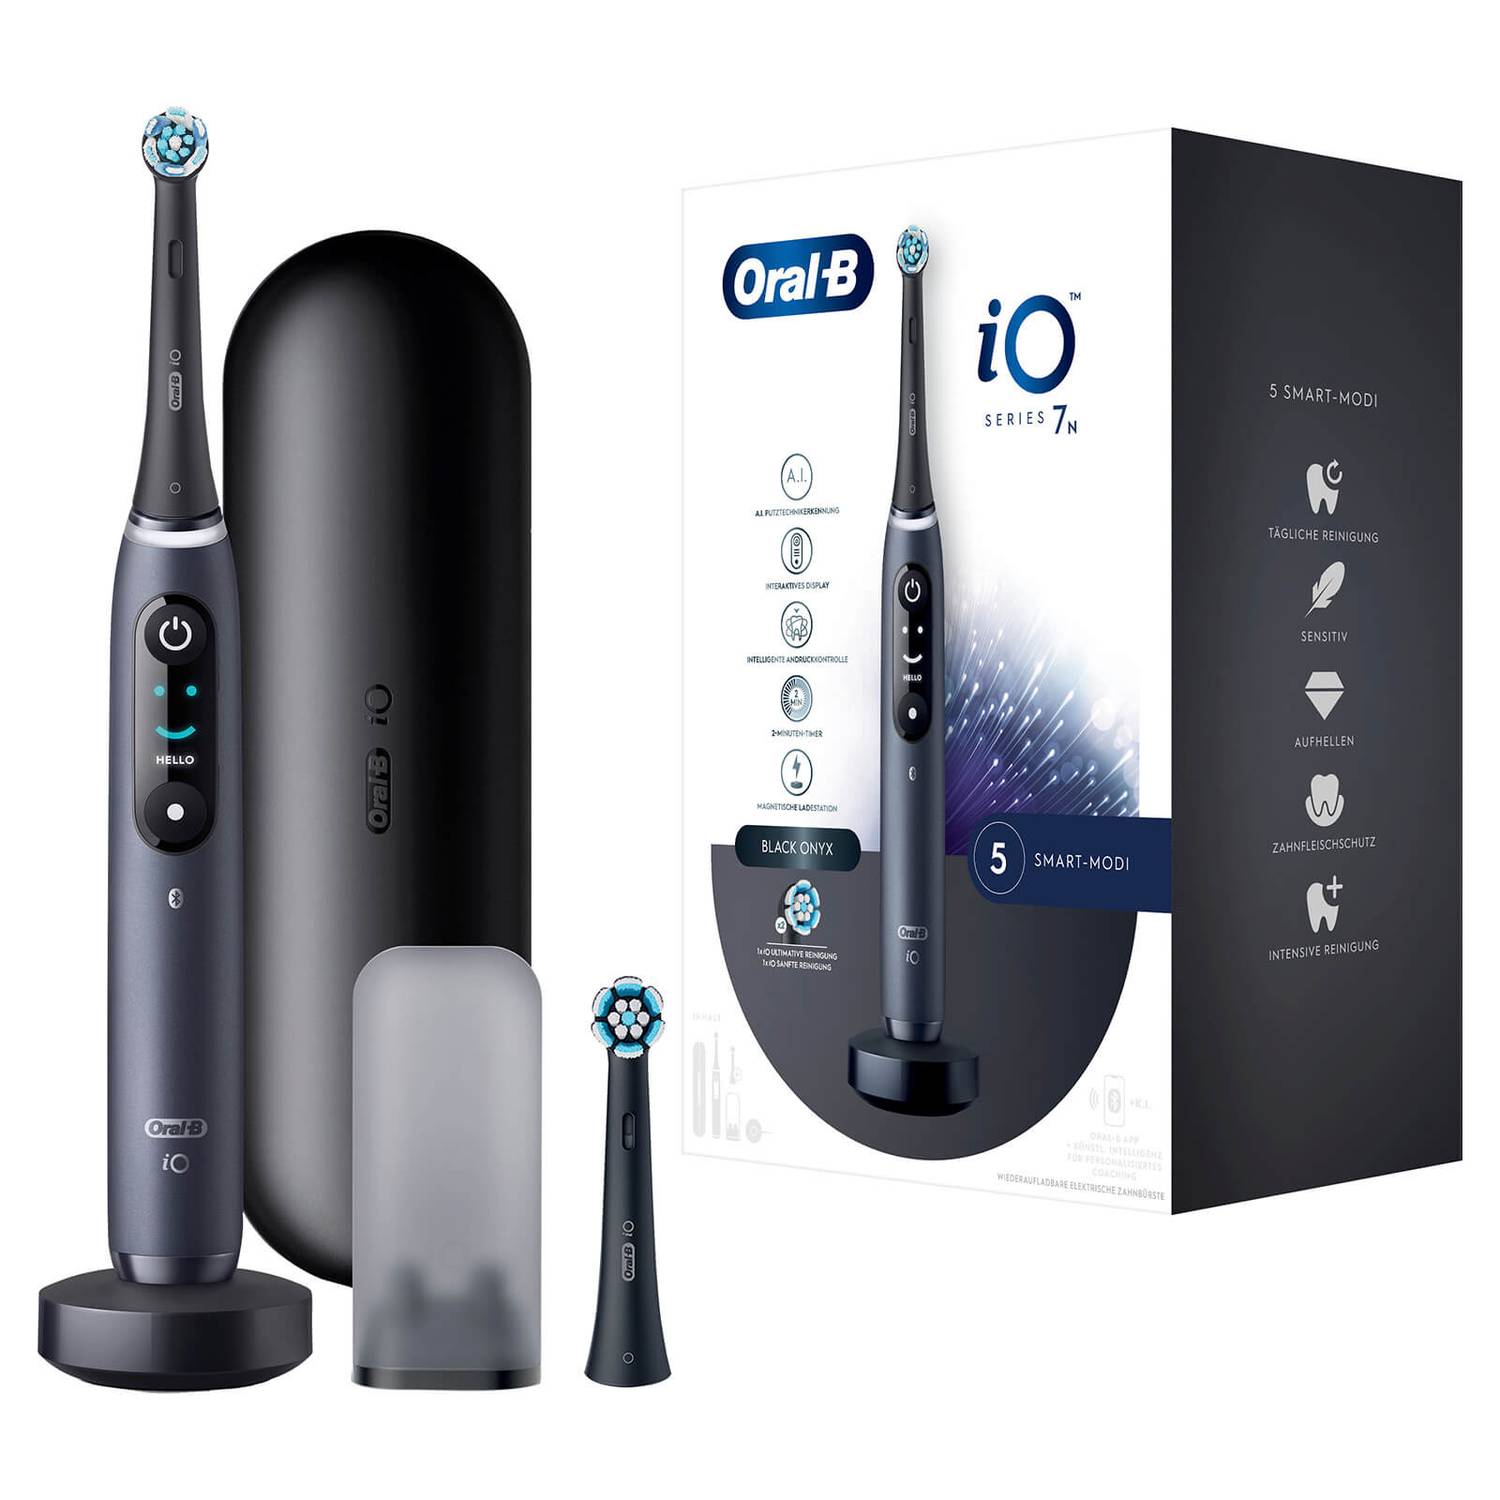 Neugeräte online Zahnbürste kaufen mit iO schwarz, Oral-B Onyx Magnet-Technologie, | Zubehör, Ersatzteile, Braun black Elektrische 7N